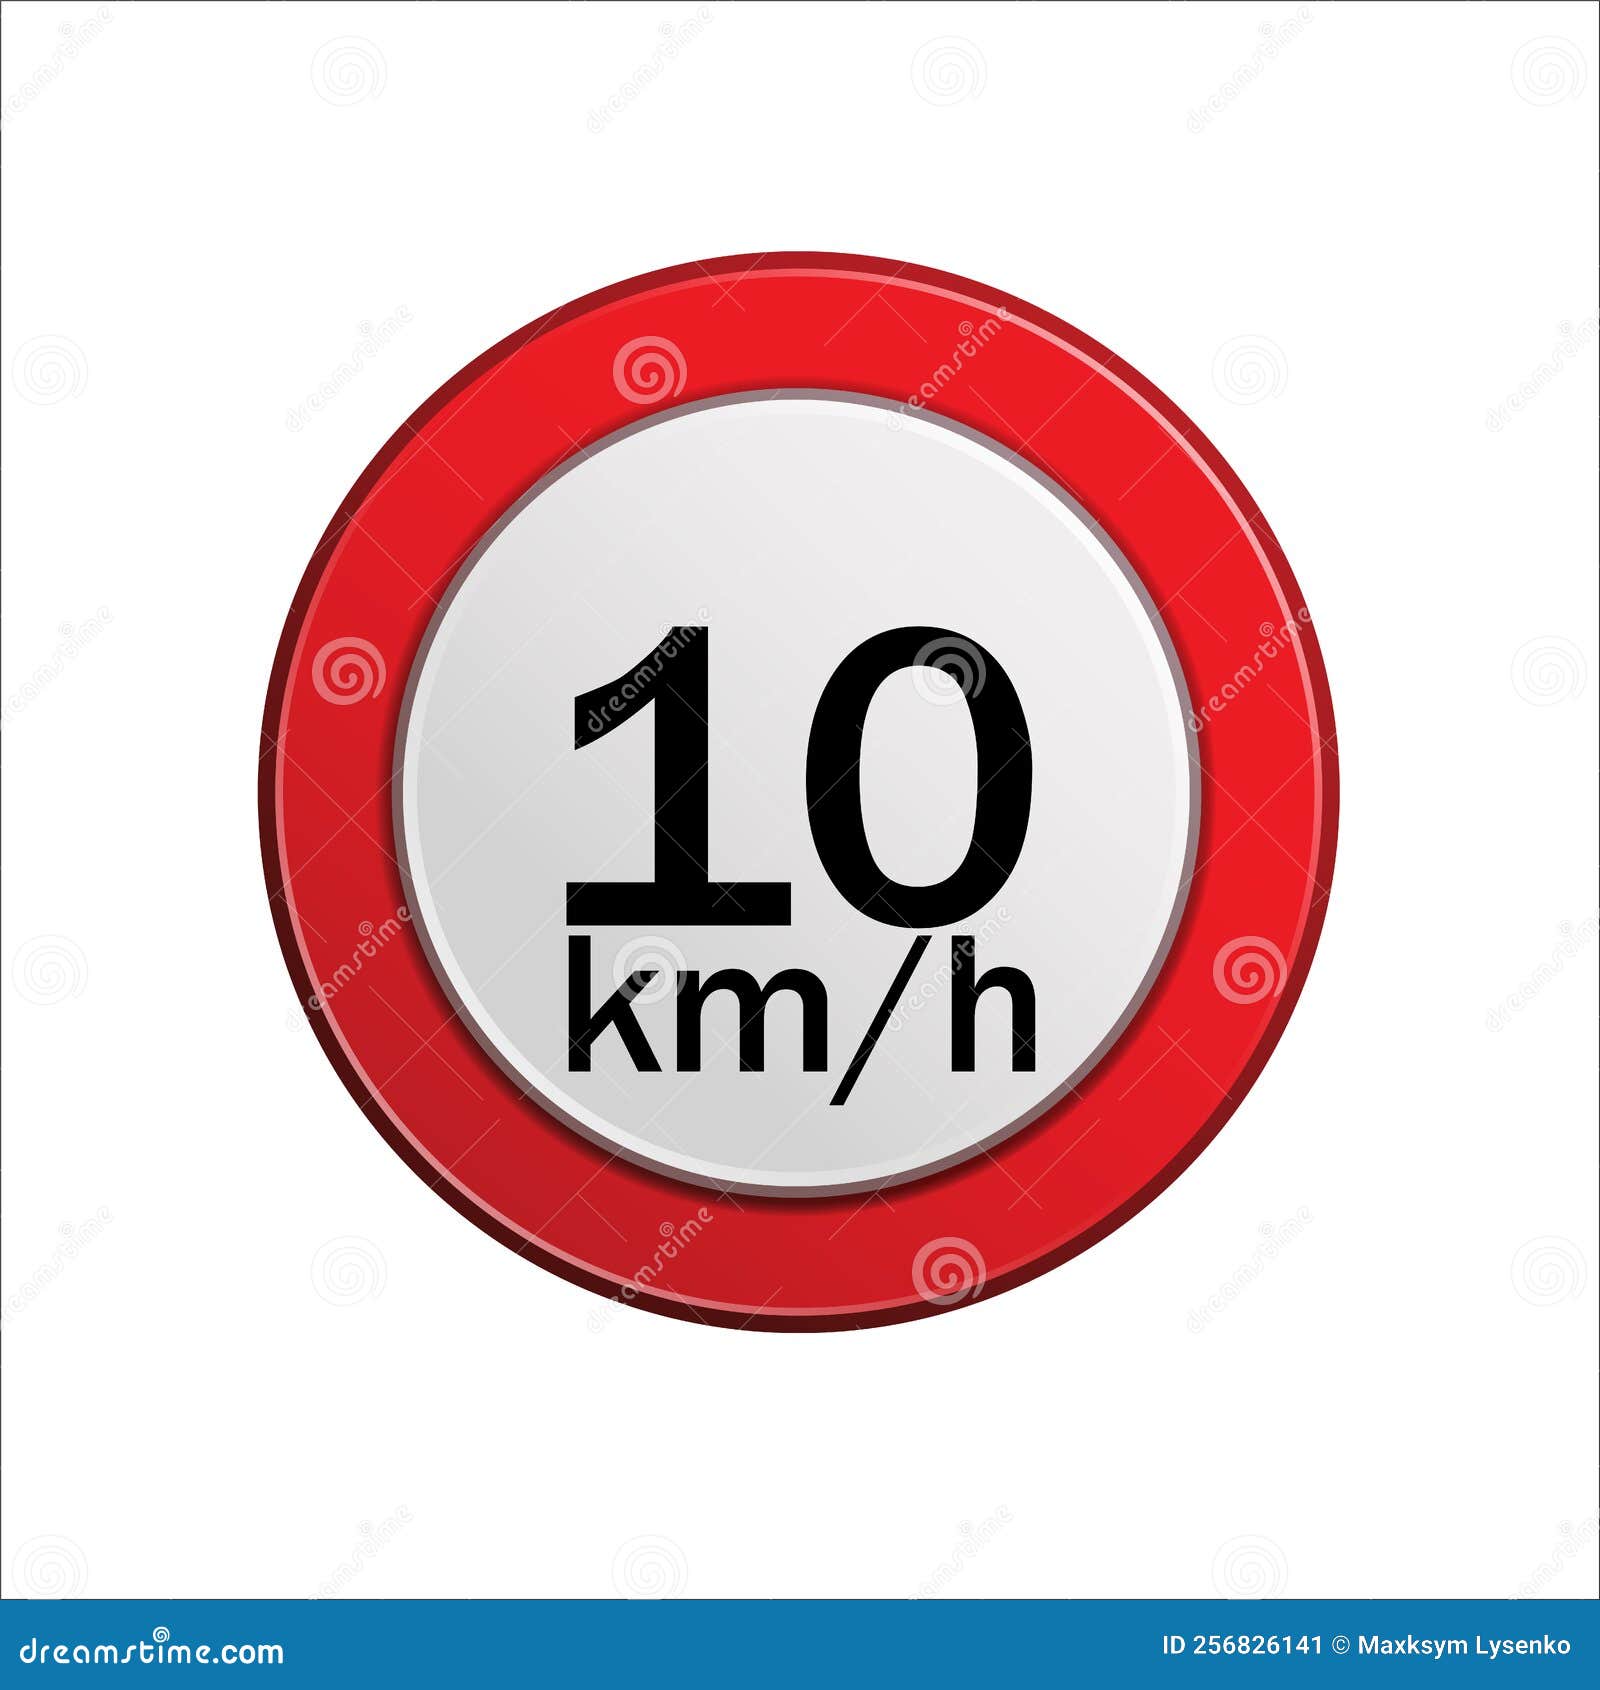 velocidade maxima permitida 10 km h maximum speed limit in portuguese  